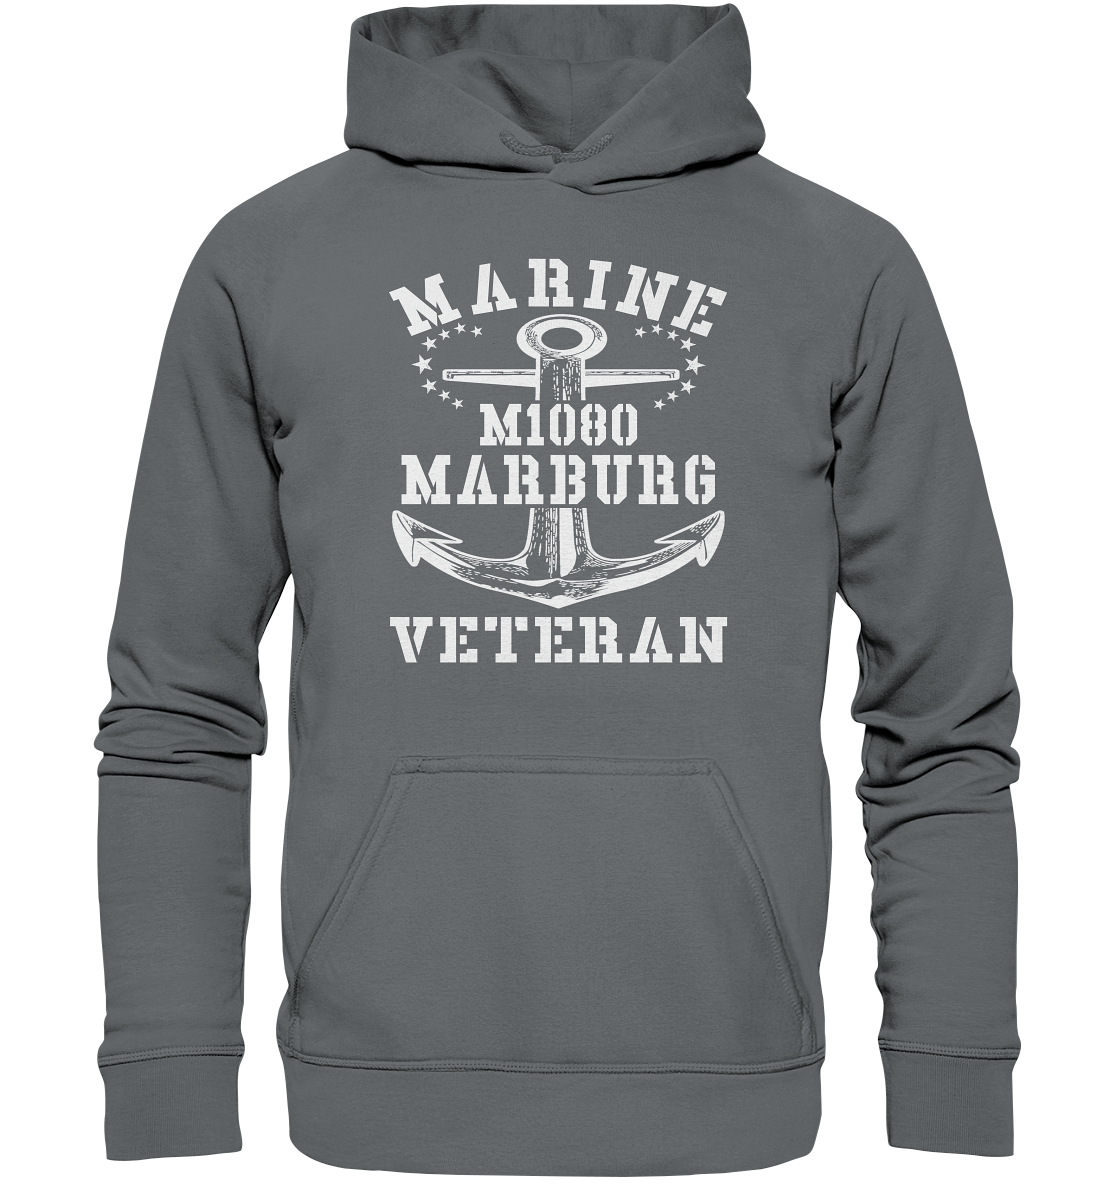 MARINE VETERAN M1080 MARBURG - Basic Unisex Hoodie